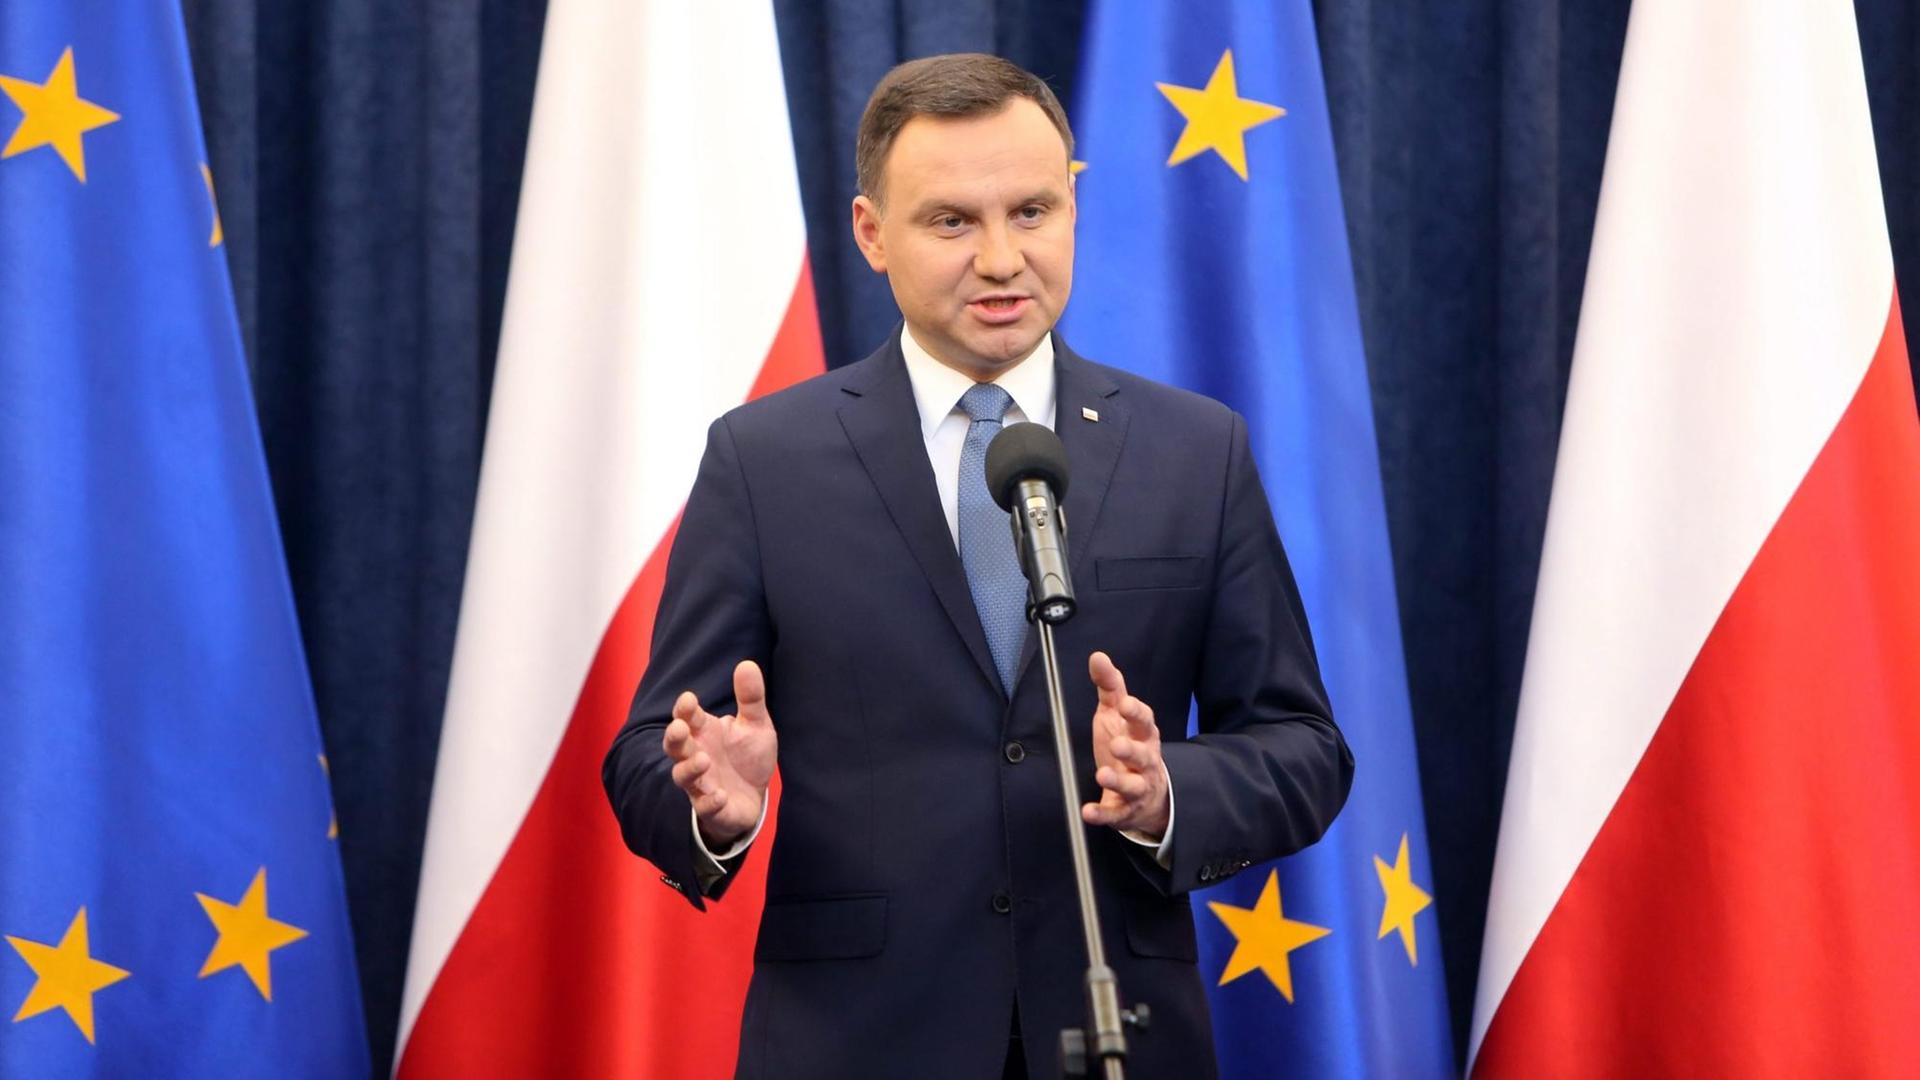 Andrzej Duda spricht bei einer Pressekonferenz in ein Mikrofon, im Hintergrund die Flaggen Polens und der EU.